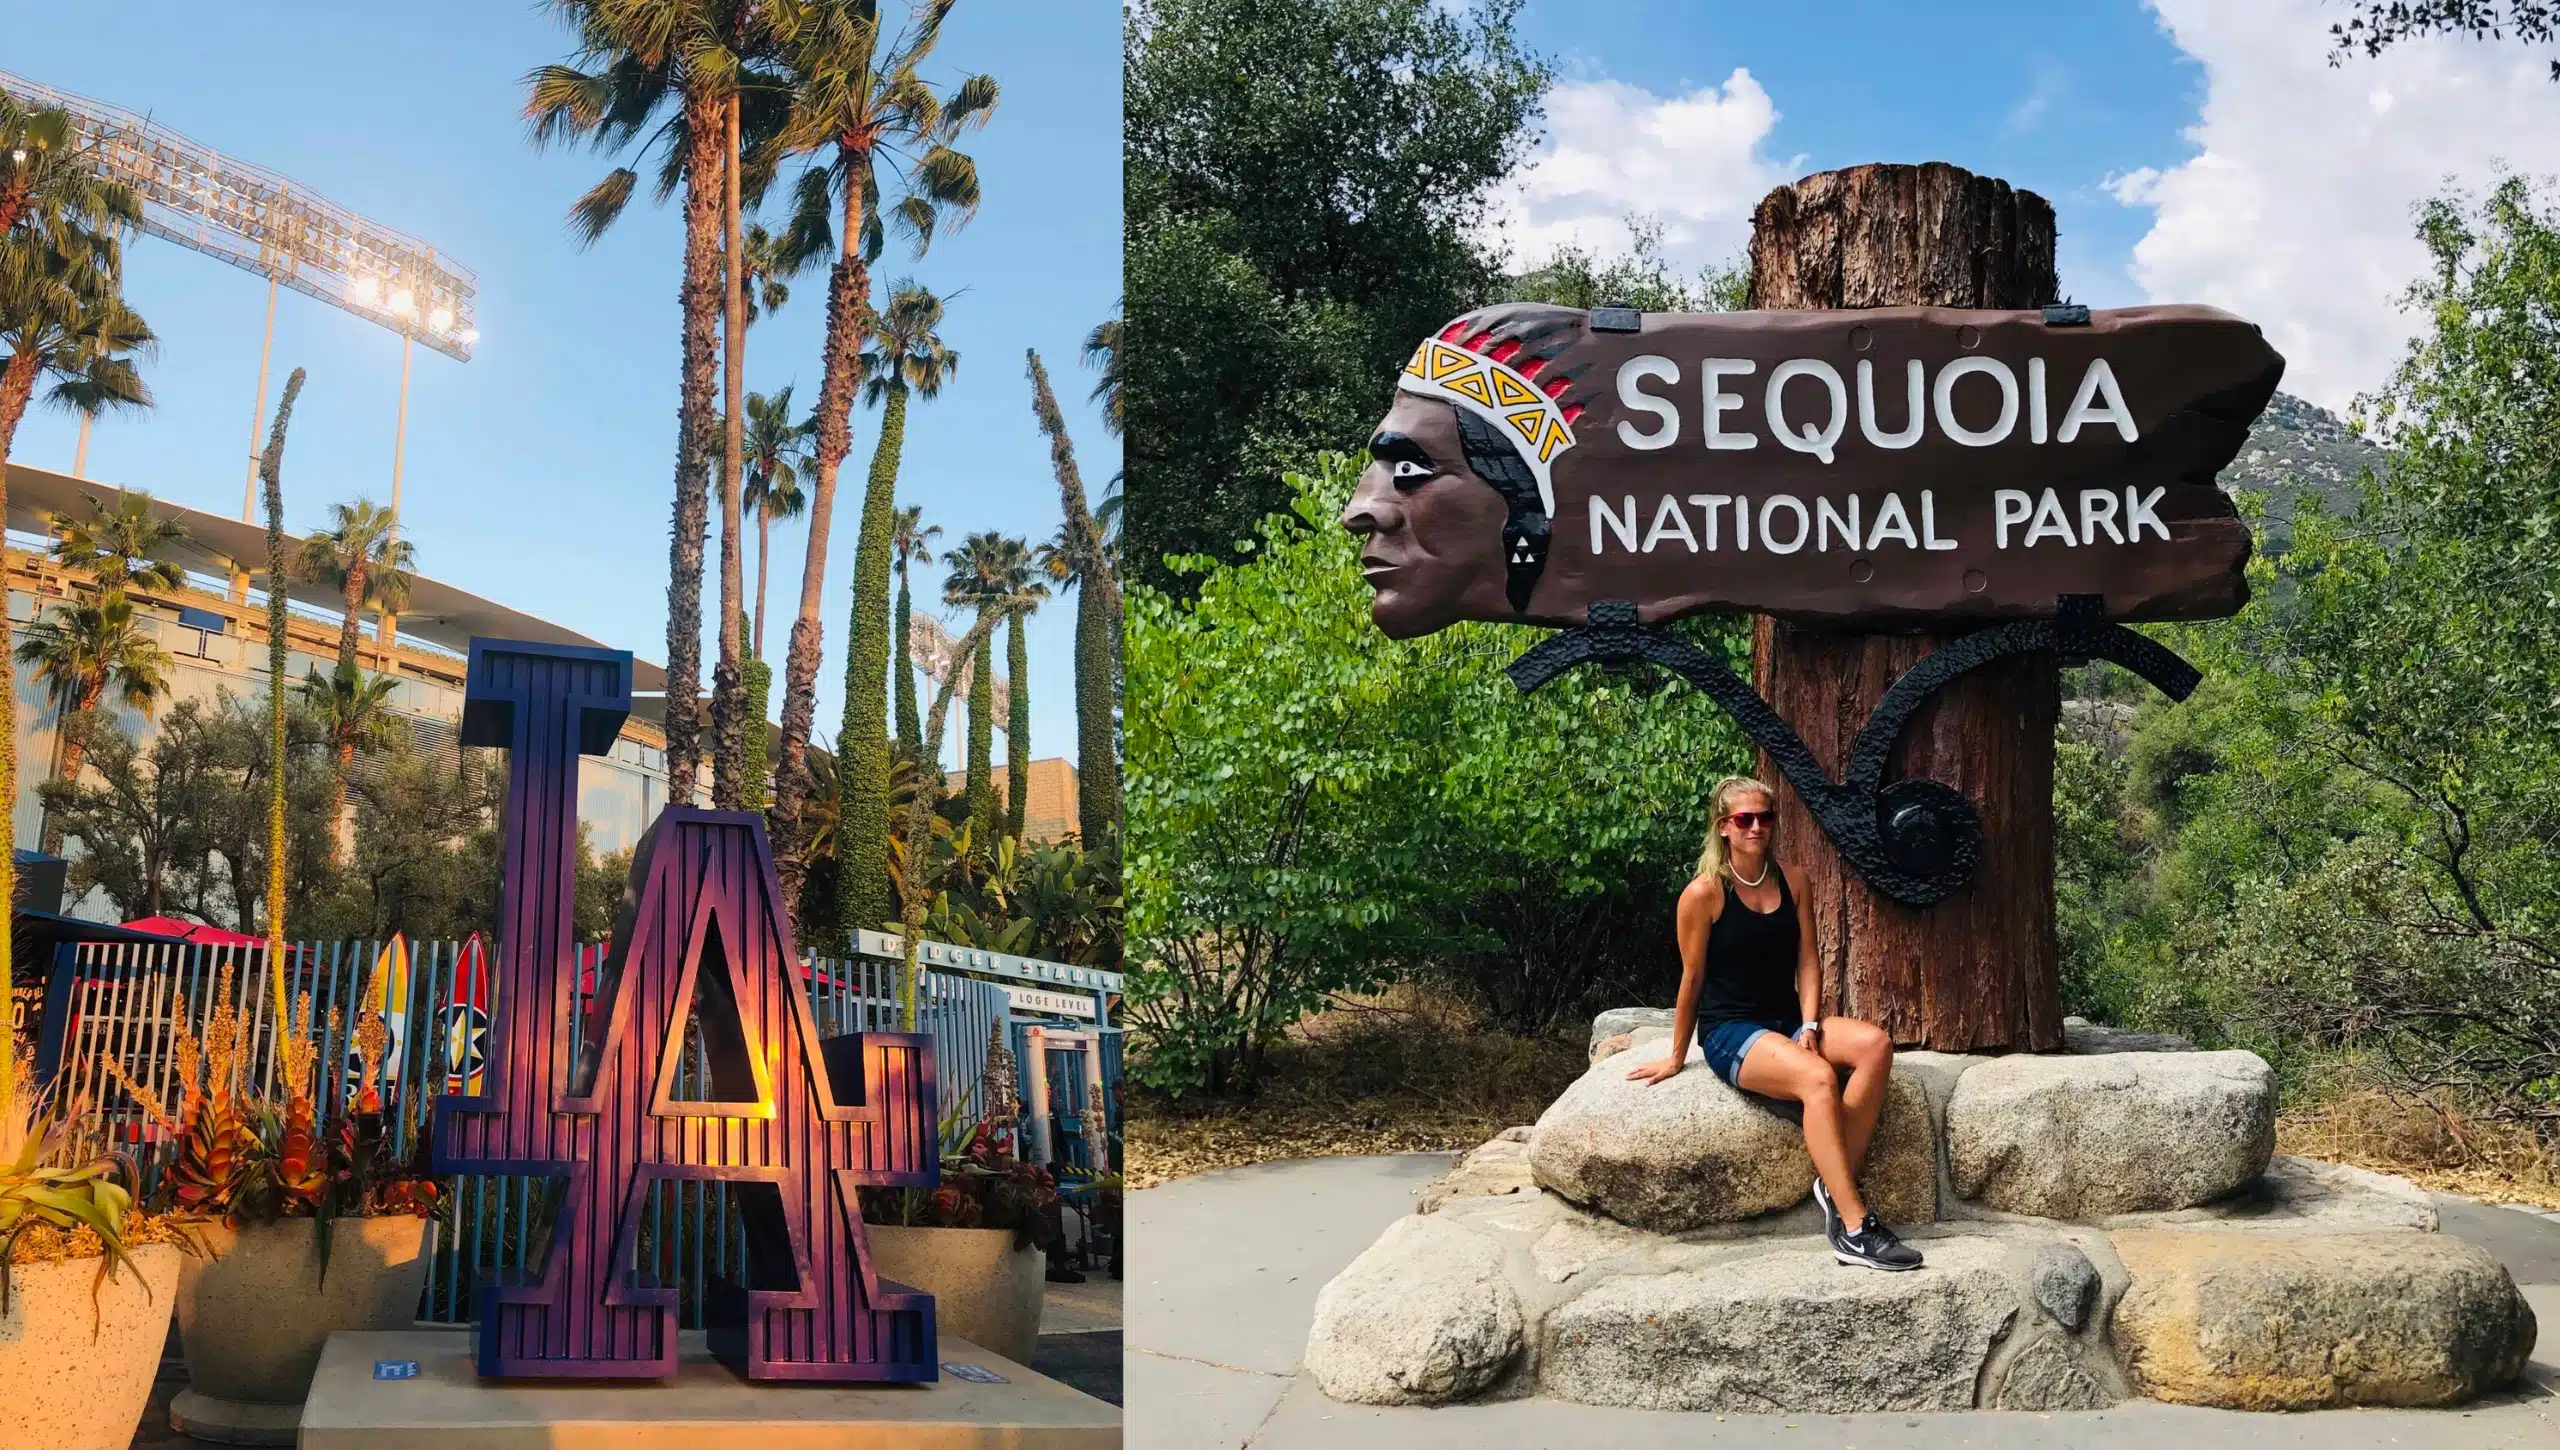 Links ein LA Dodgers Logo, Rechts ein Pfahl mit der Inschrift "Sequoia National Park"